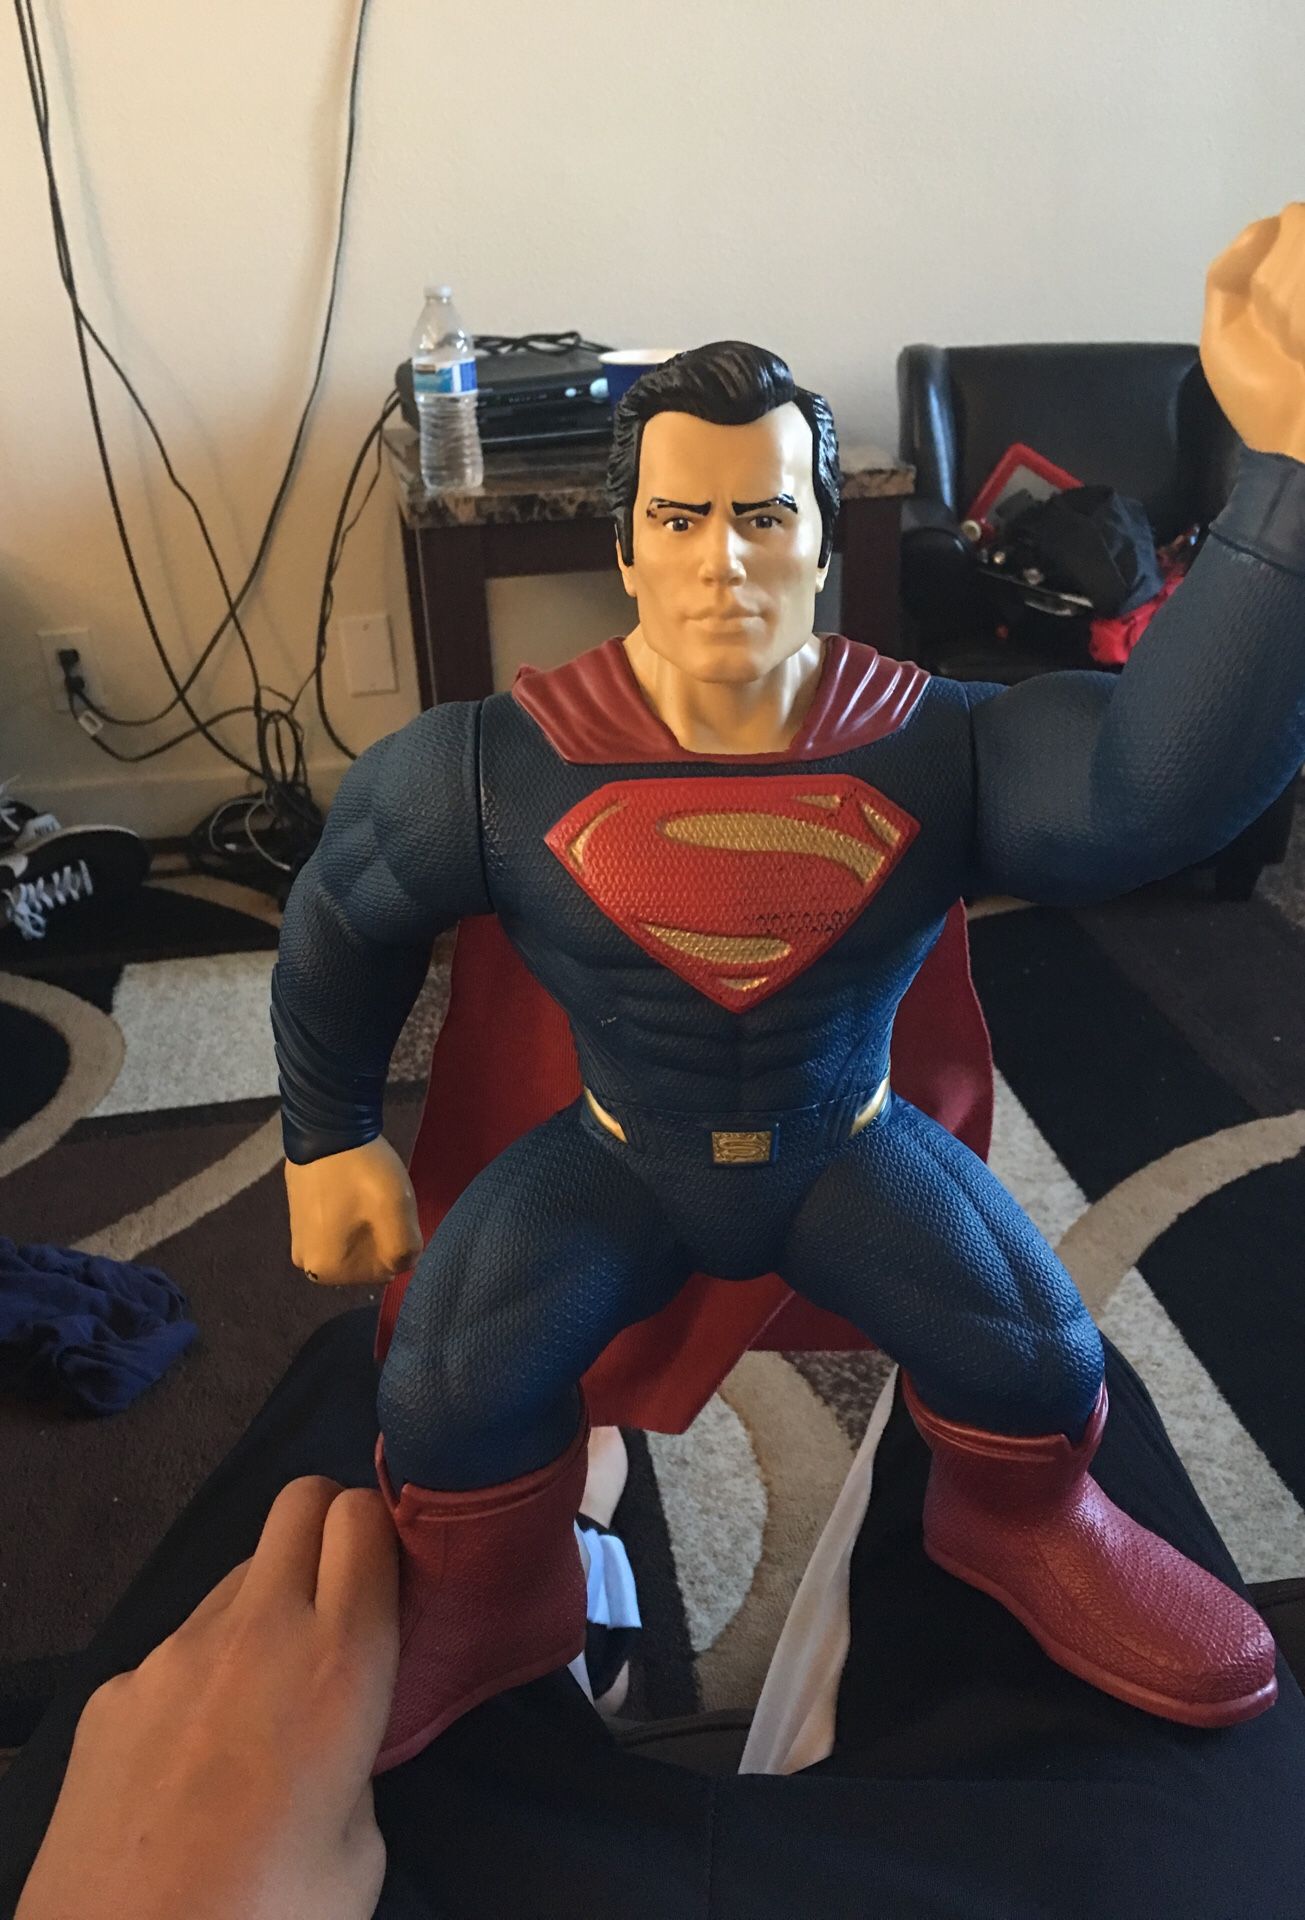 Superman action figure